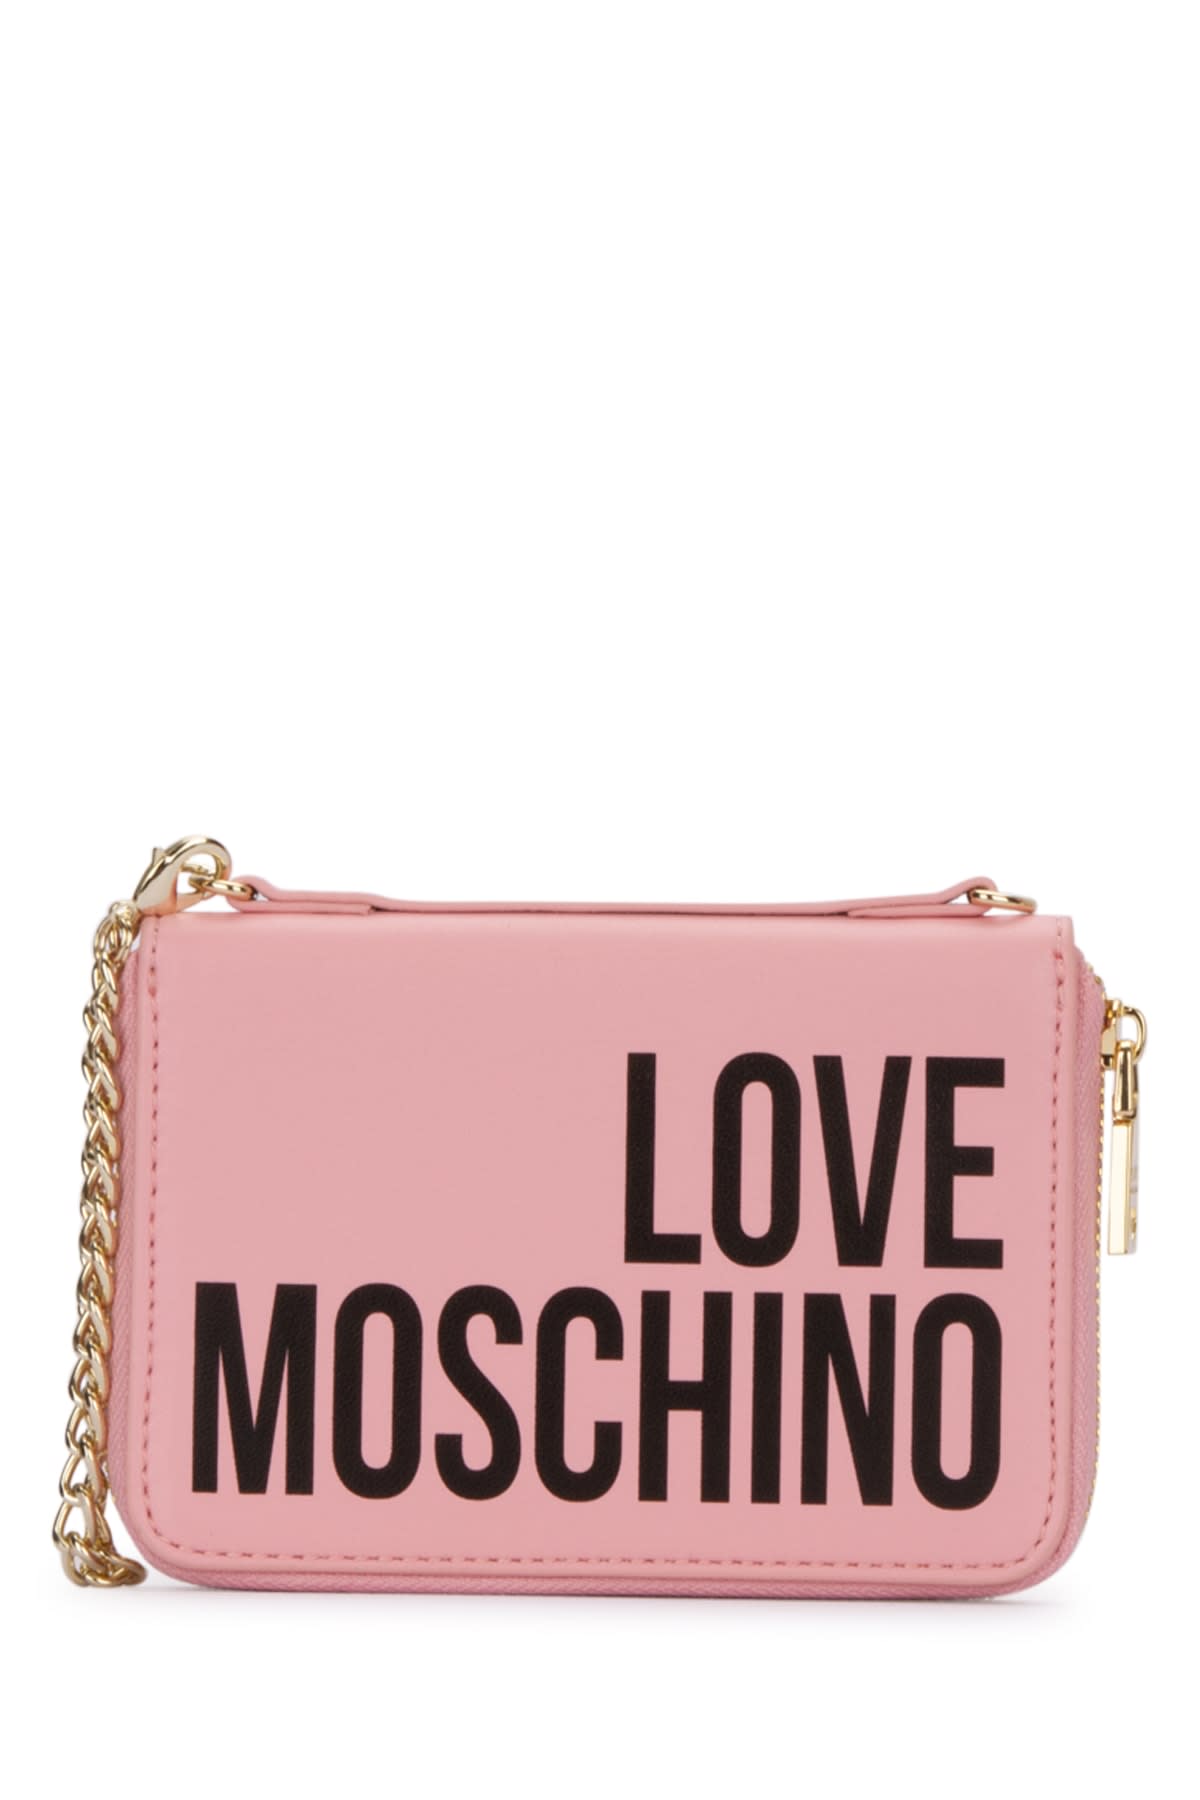 Love Moschino Accessori